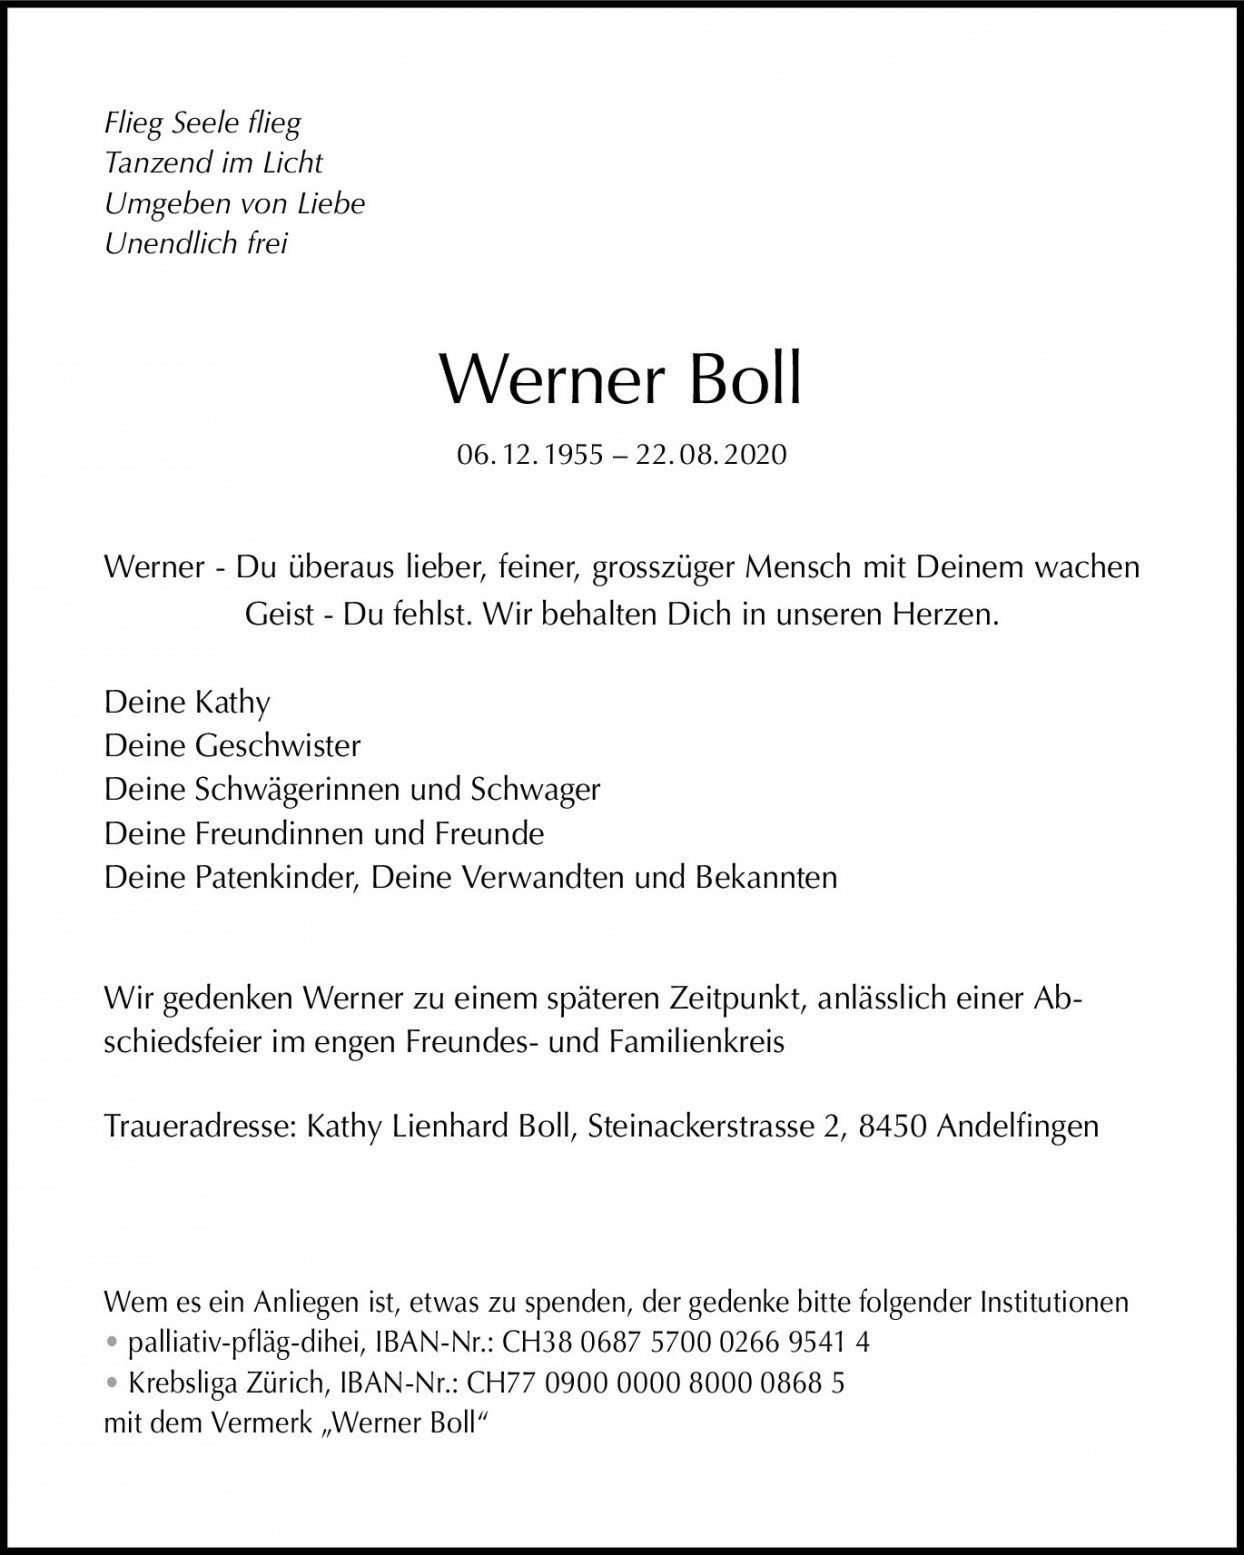 Werner Boll